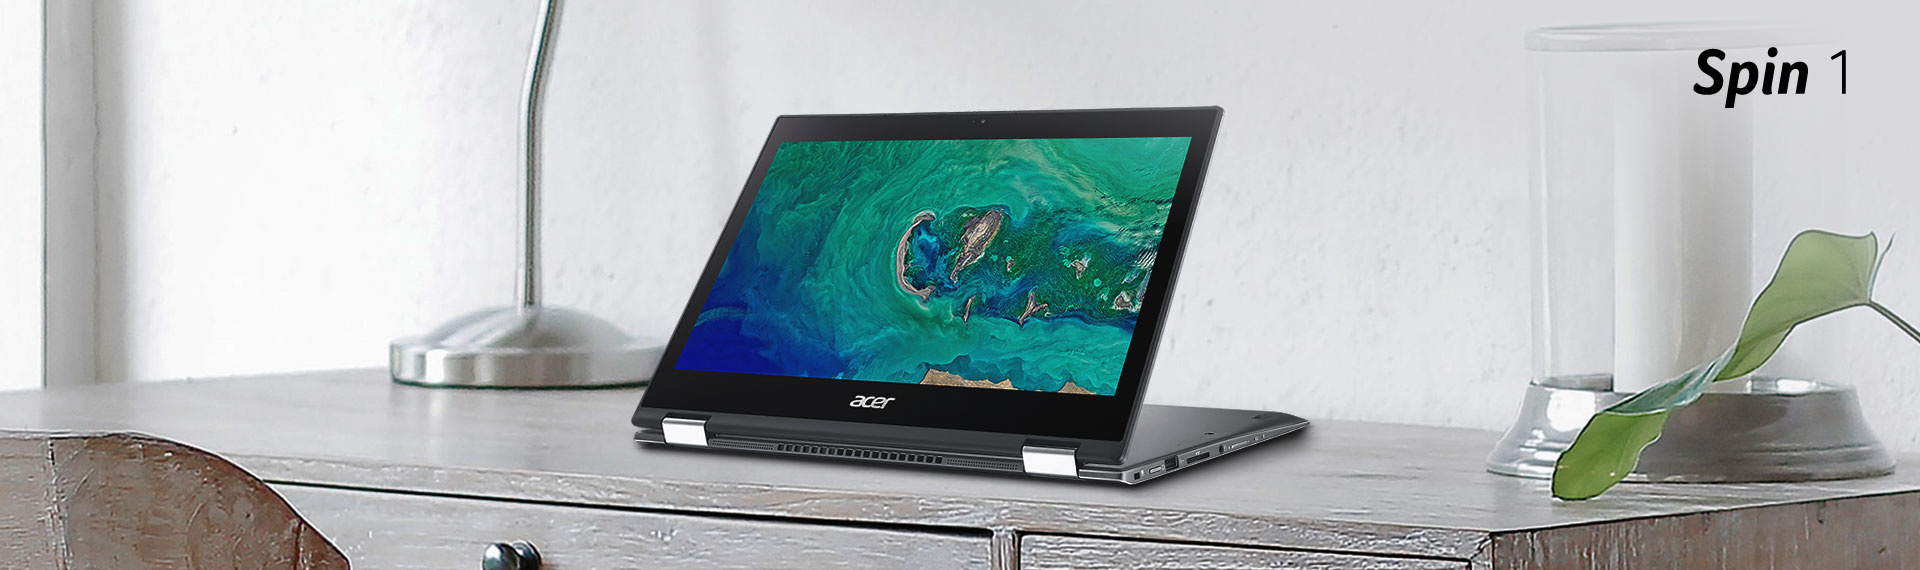 Notebook Acer Spin 1, Menawarkan Fungsionalitas dan Mobilitas